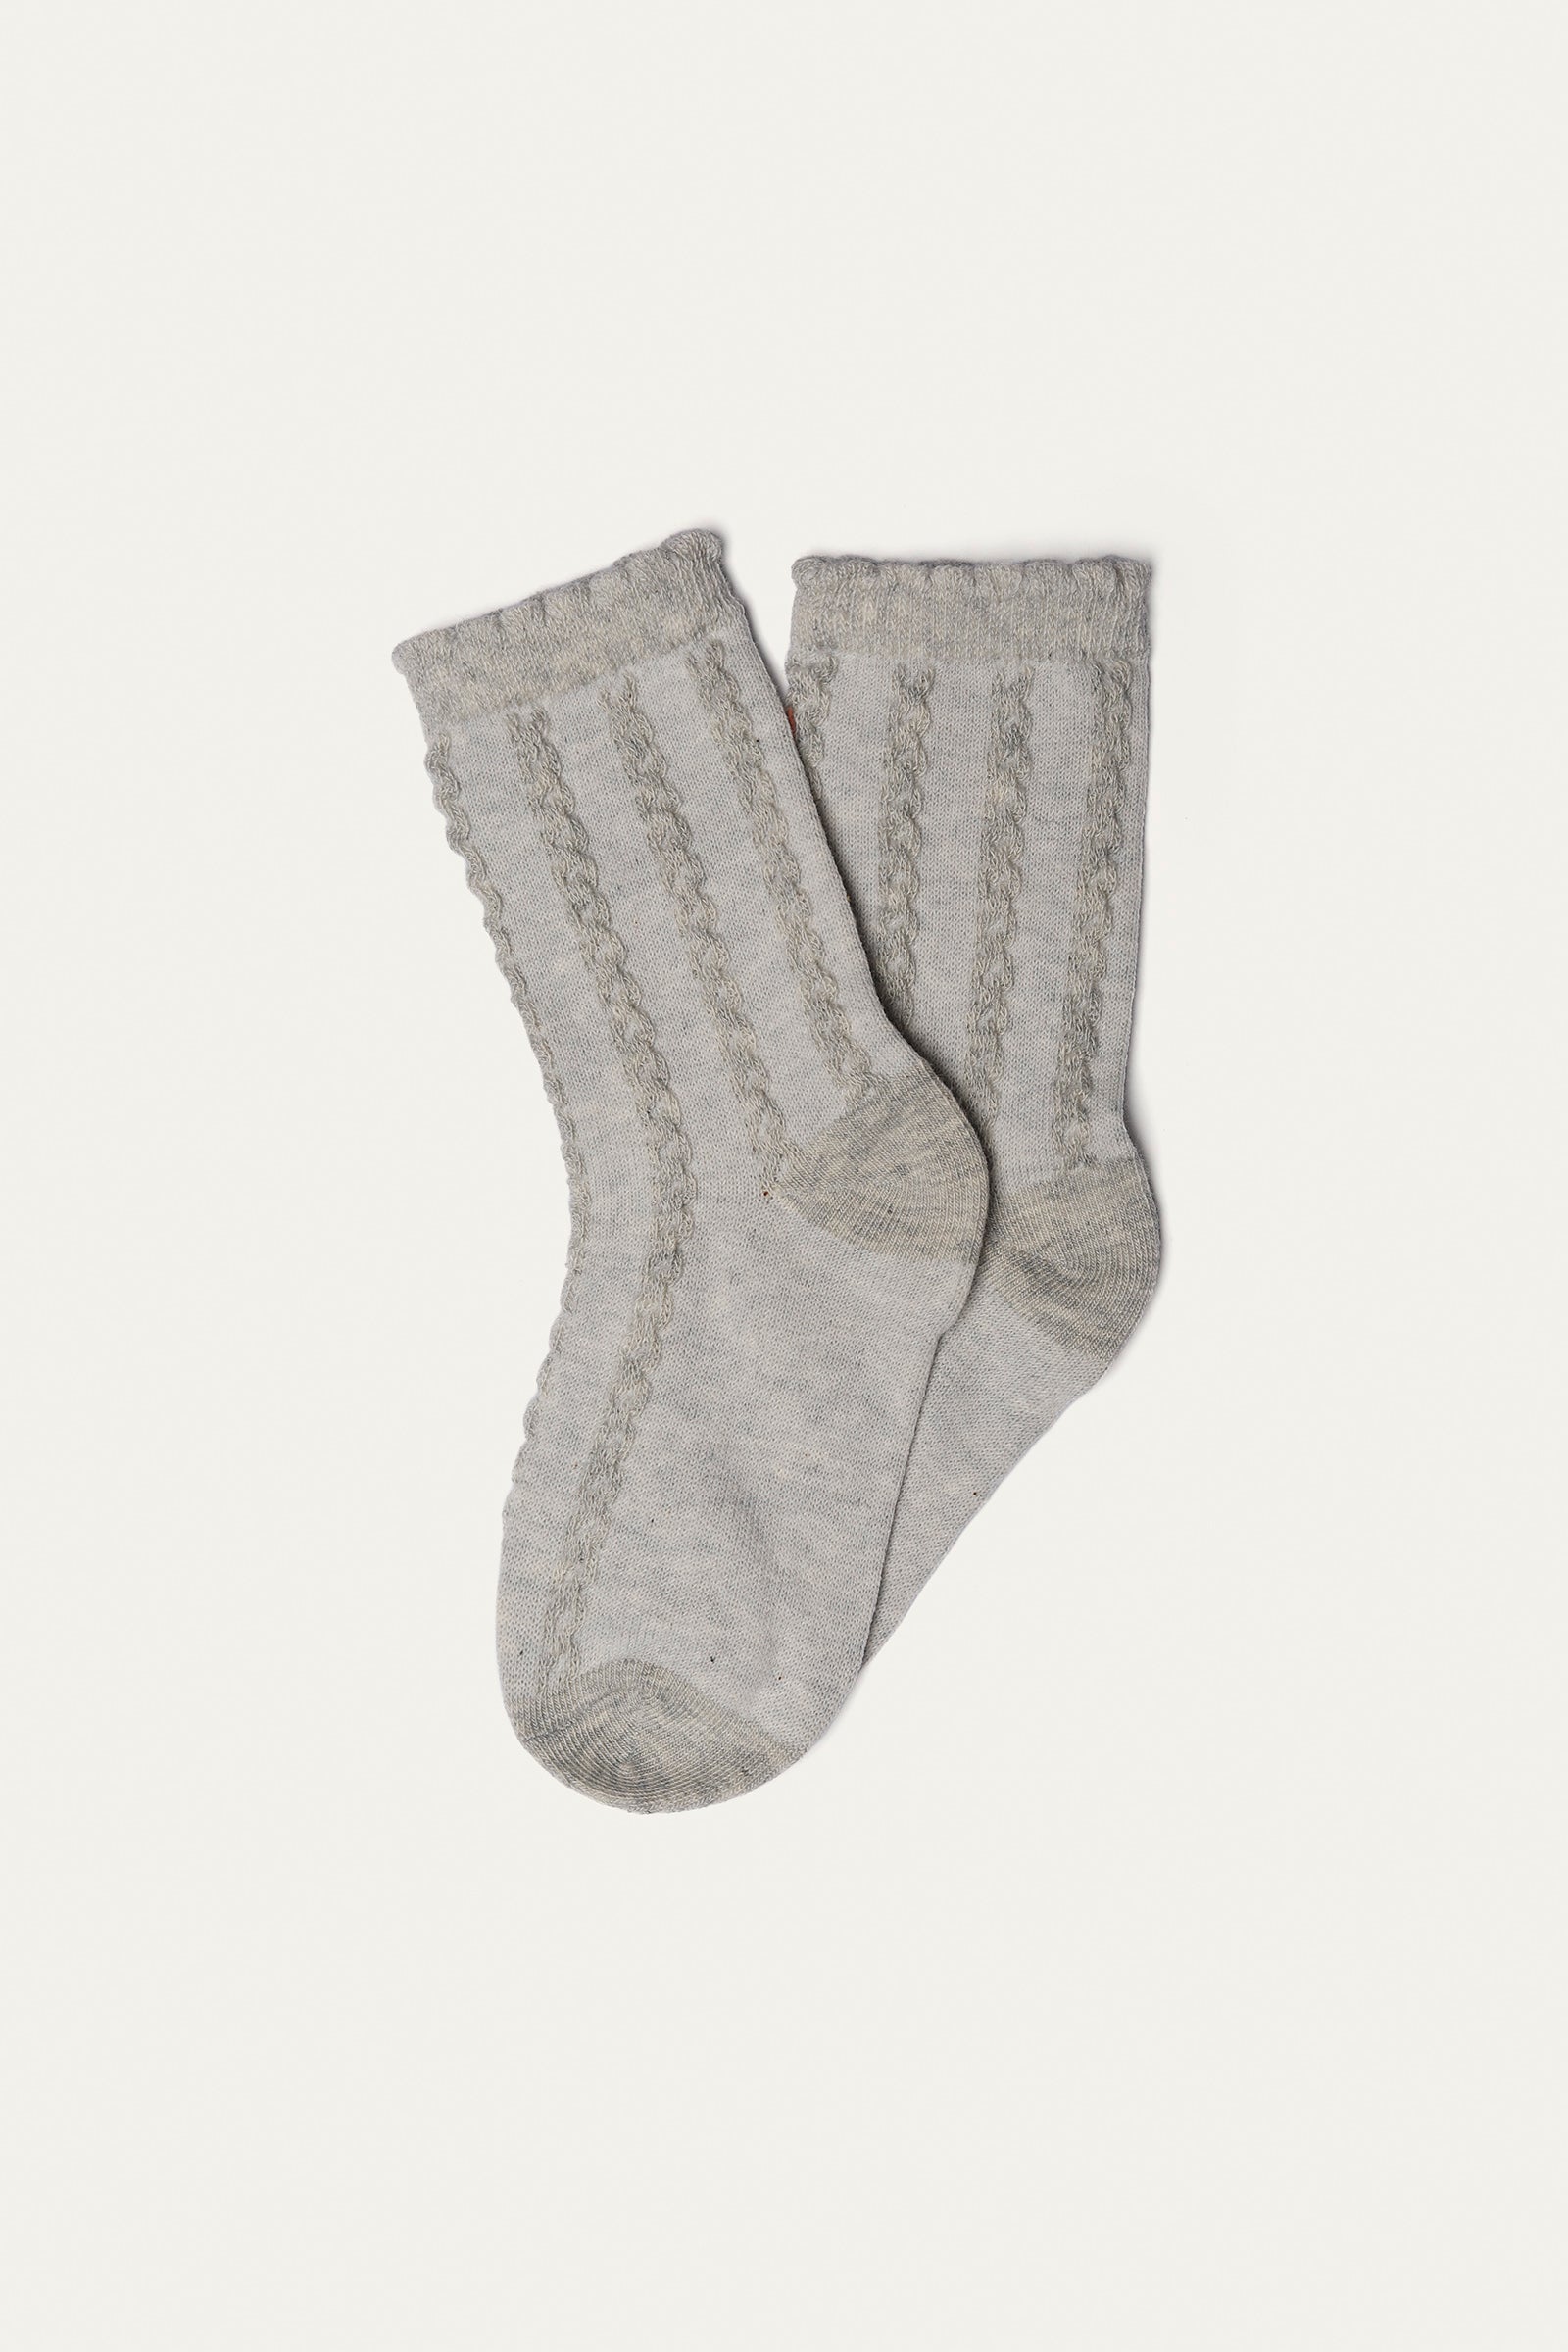 Socks (pack of 5) (GS-159R)